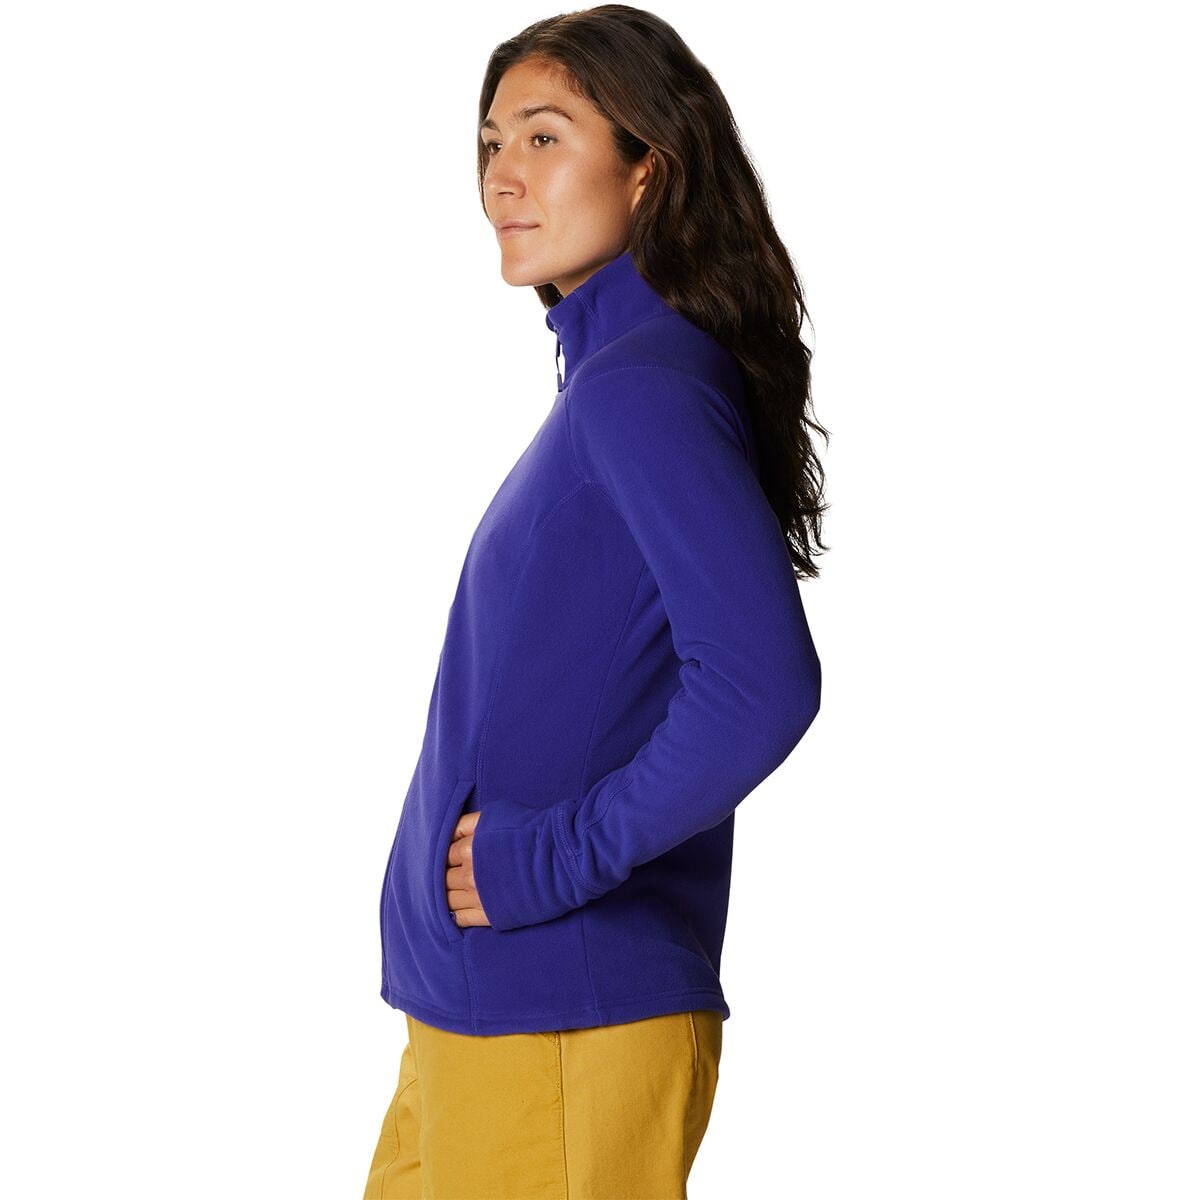 Mountain Hardwear Microchill 2.0 Fleece Jacket - Women's - Clothing